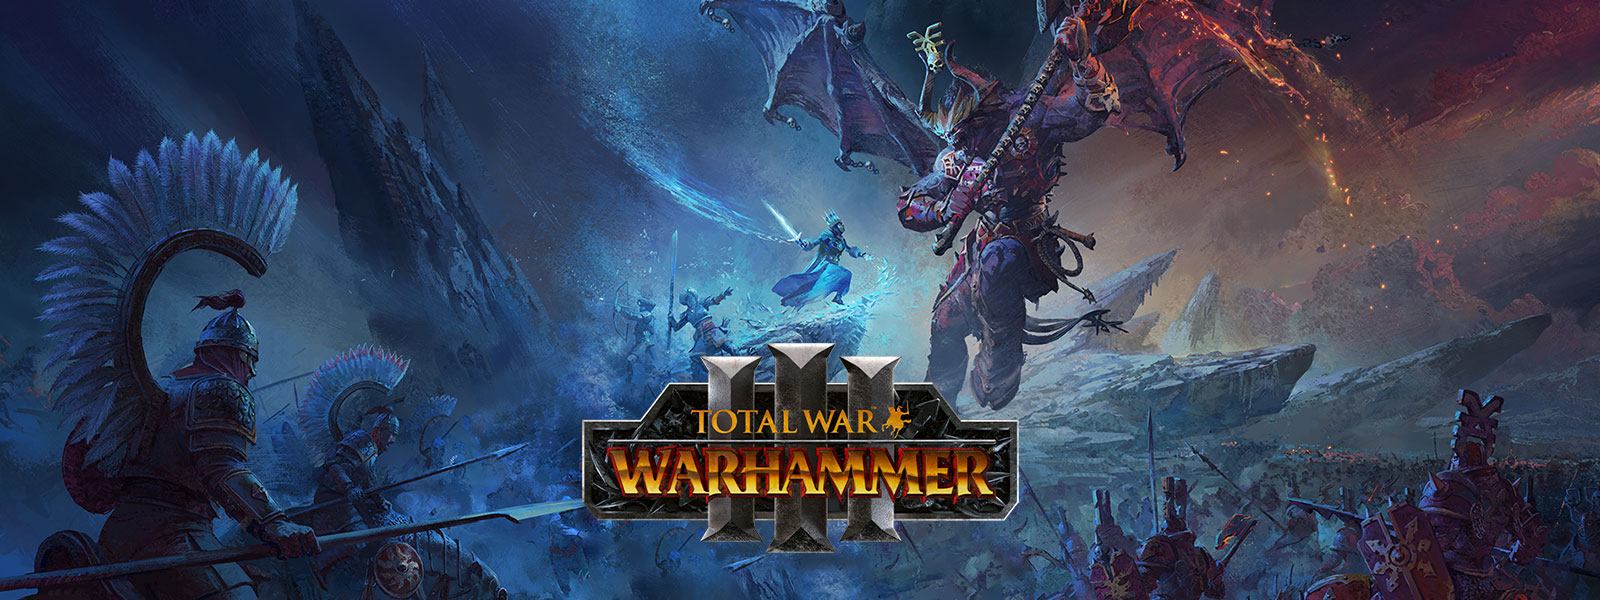 Total War Warhammer 3, egy jégvarázsló egy óriási sárkánydémonnal száll szembe a csatatér felett.